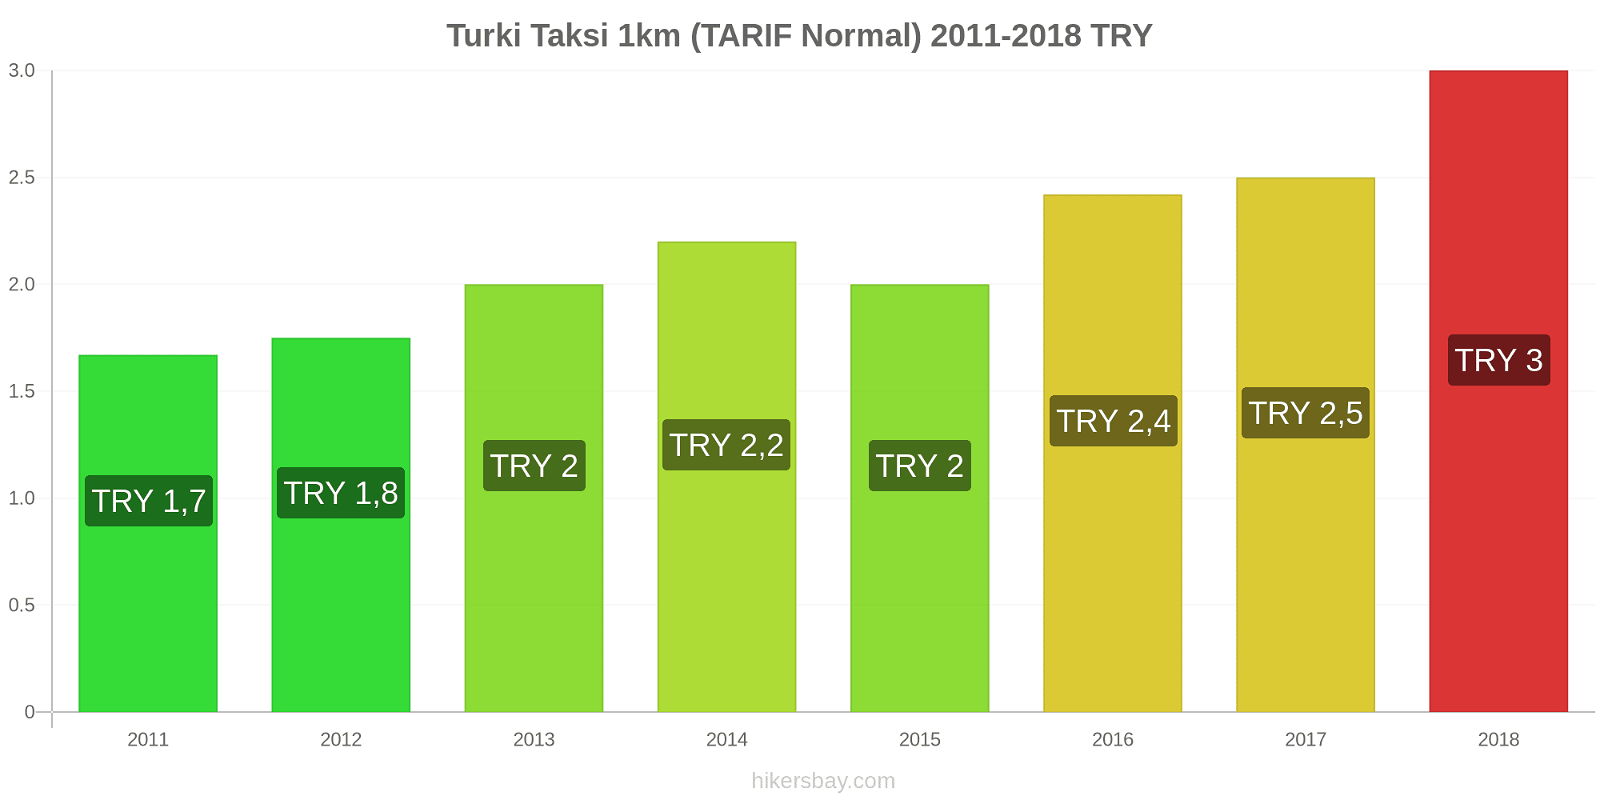 Turki perubahan harga Taksi 1km (Tarif Normal) hikersbay.com